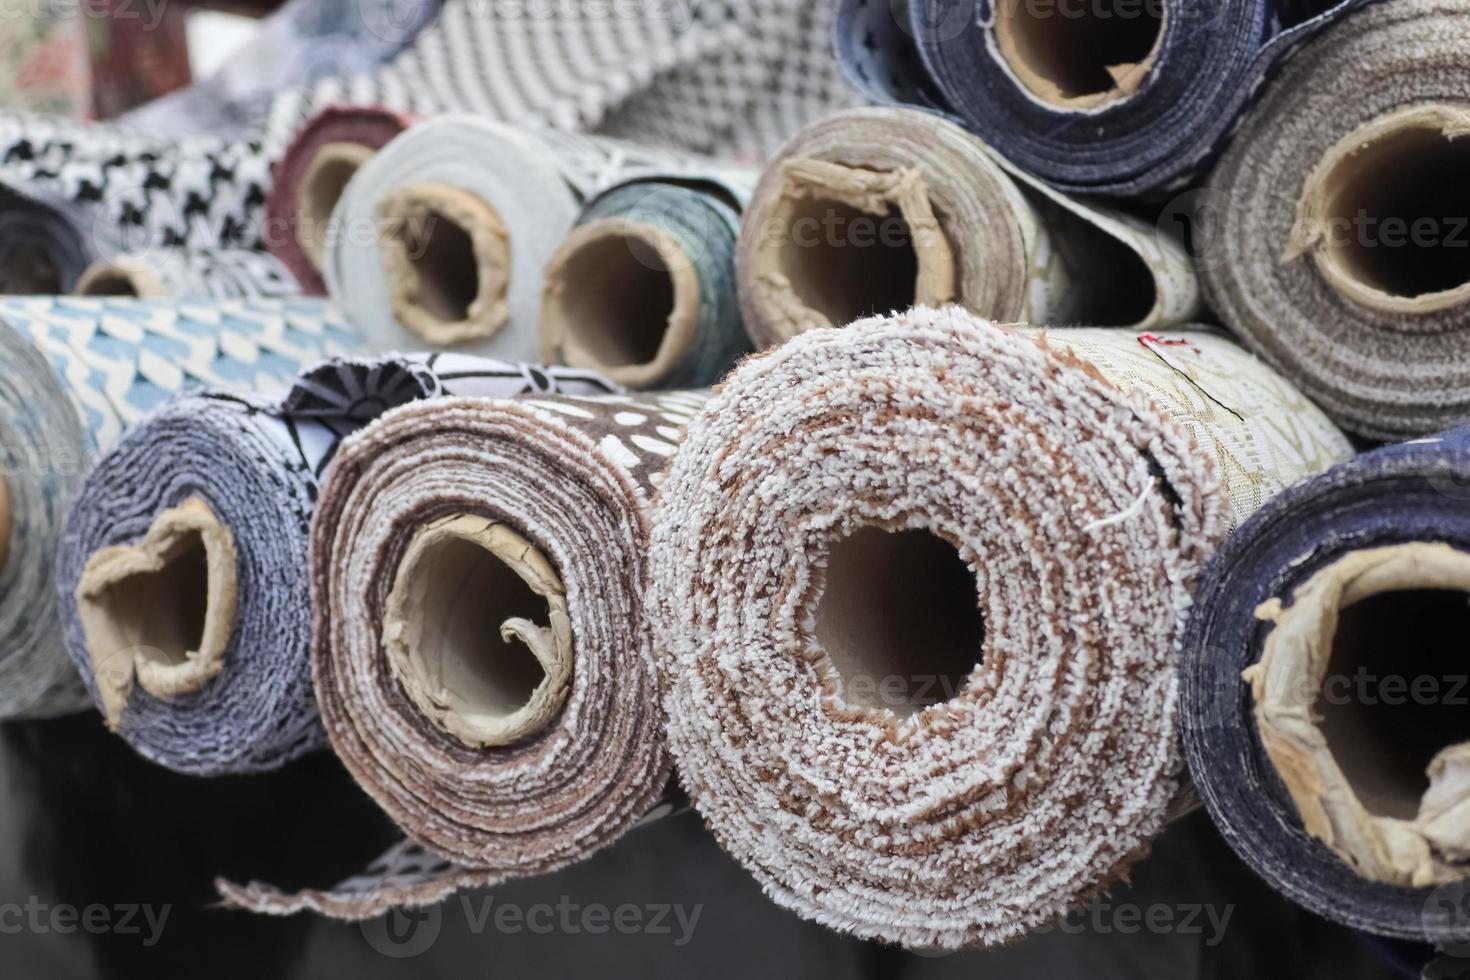 muestras de telas y tejidos de diferentes colores que se encuentran en un mercado de tejidos foto